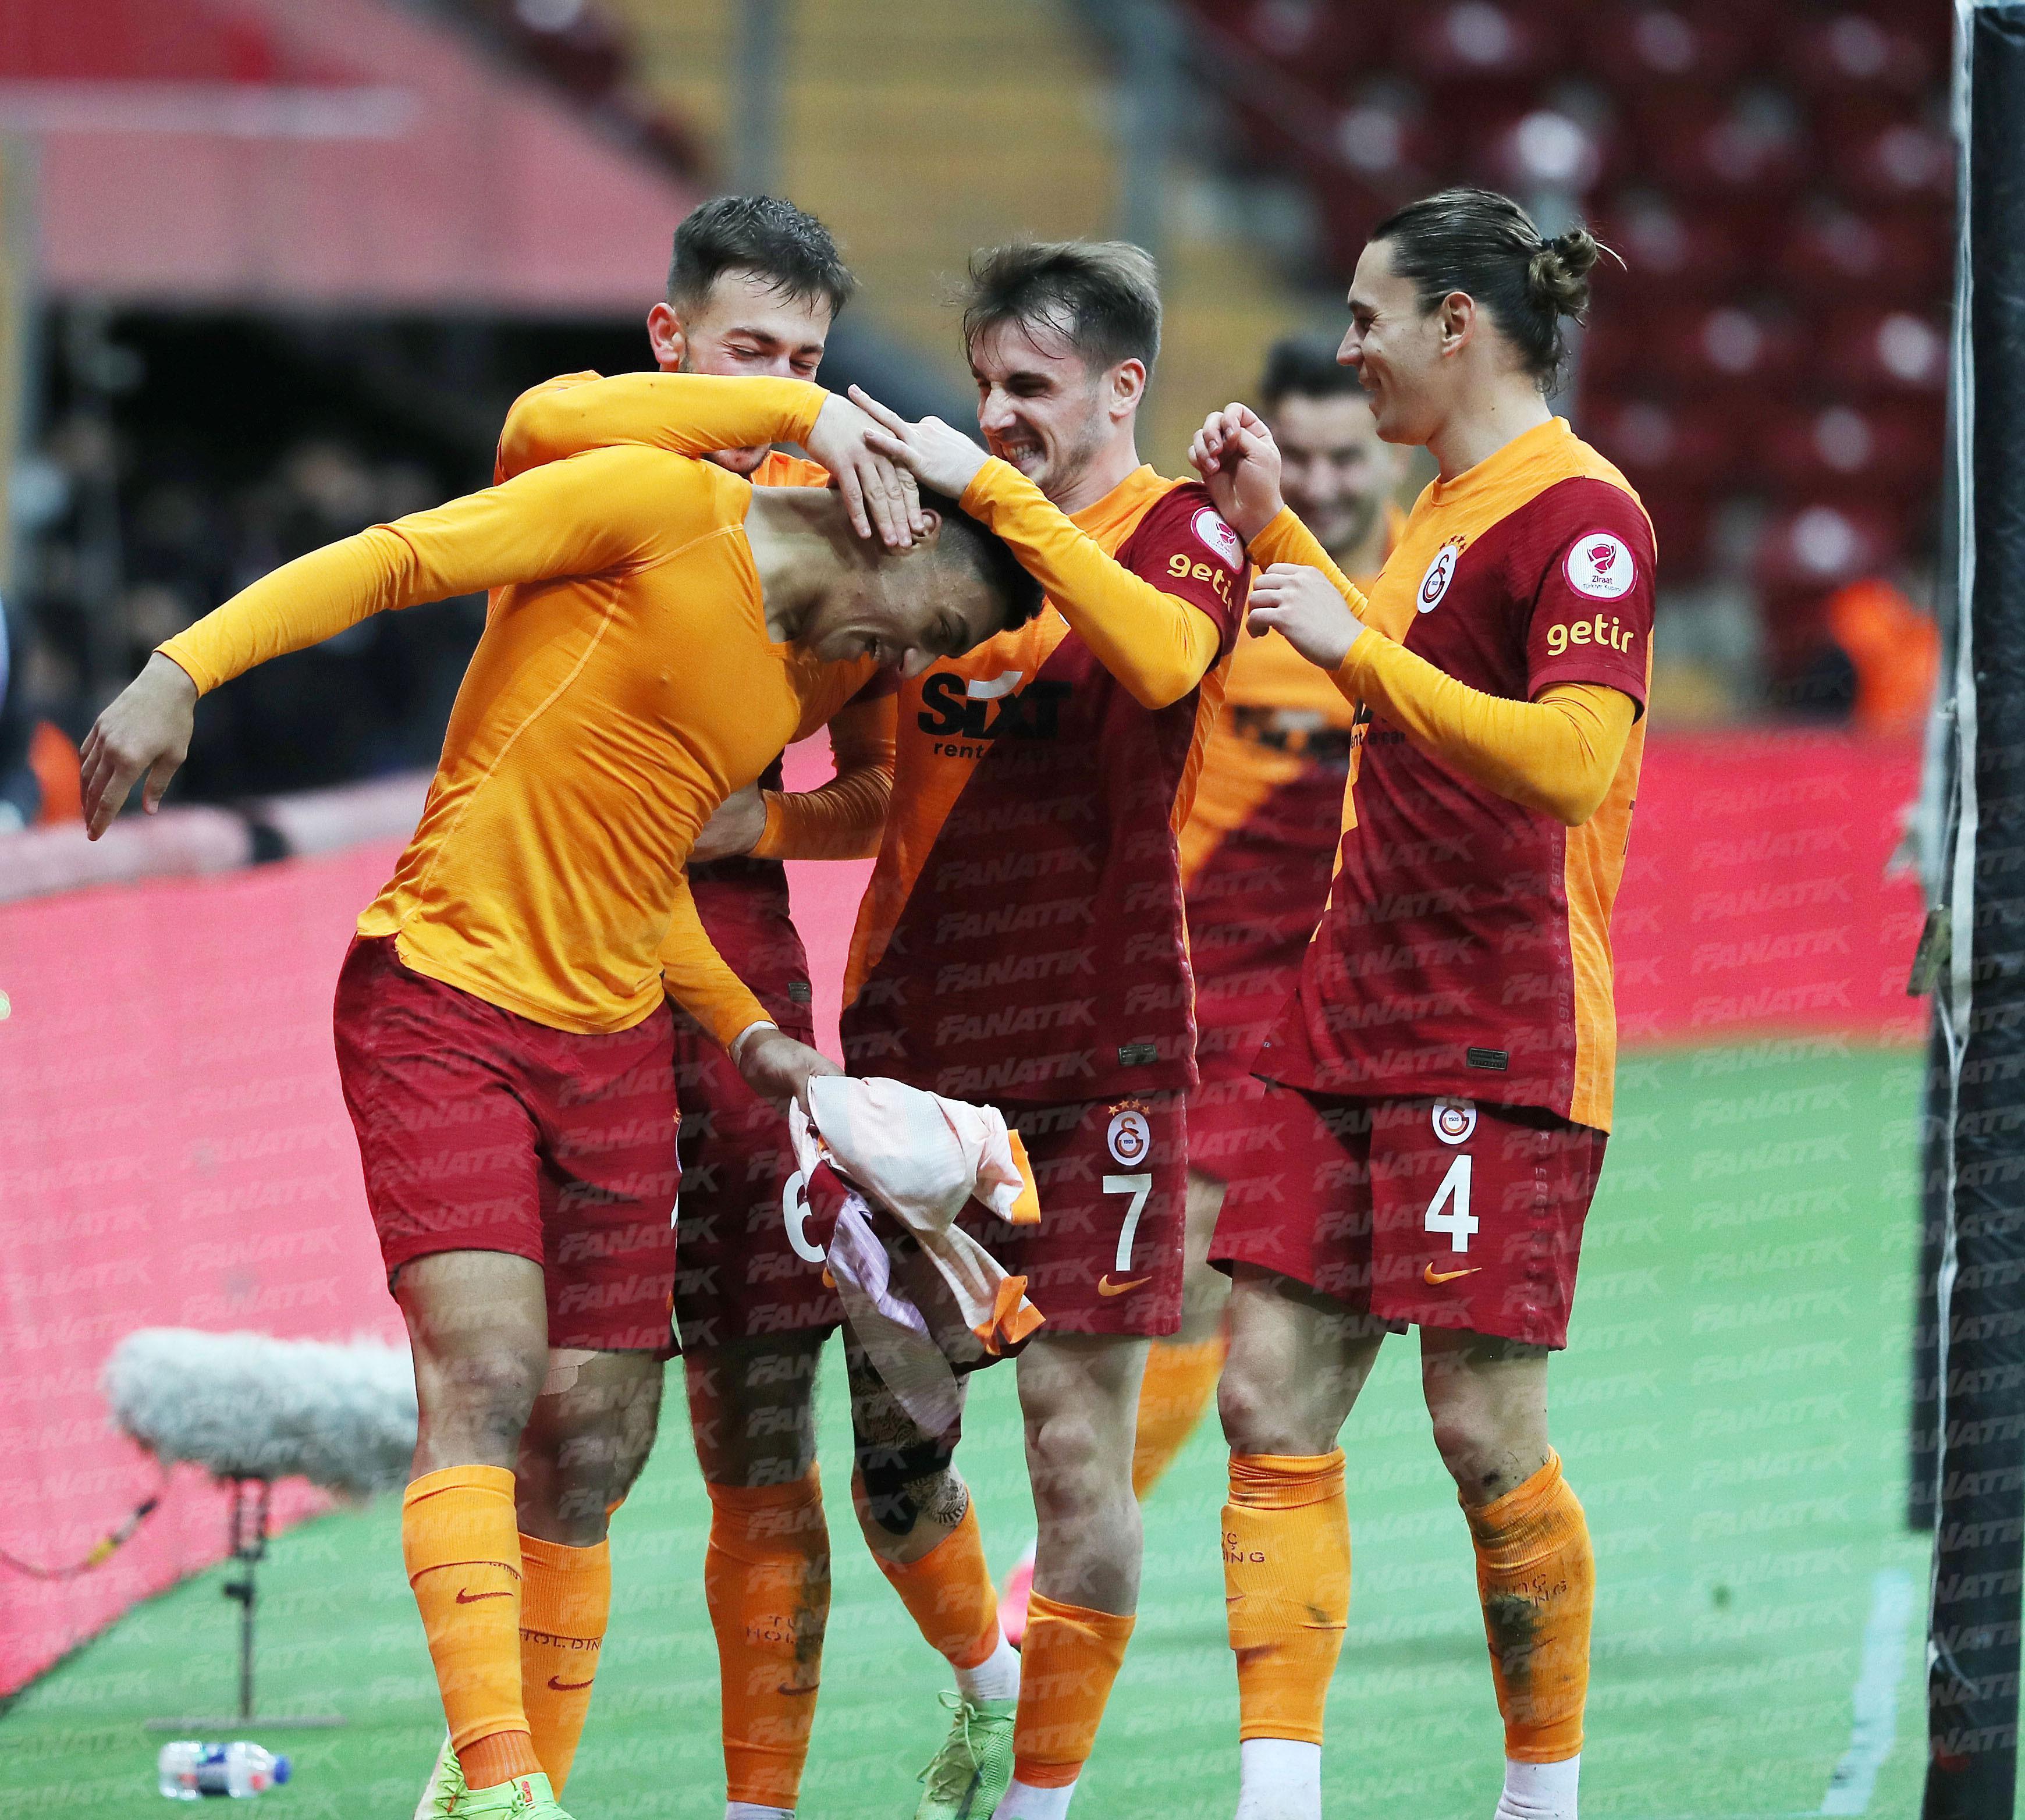 (ÖZET) Galatasaray - Denizlispor maç sonucu: 3-3 (Penatılarda 8-9)